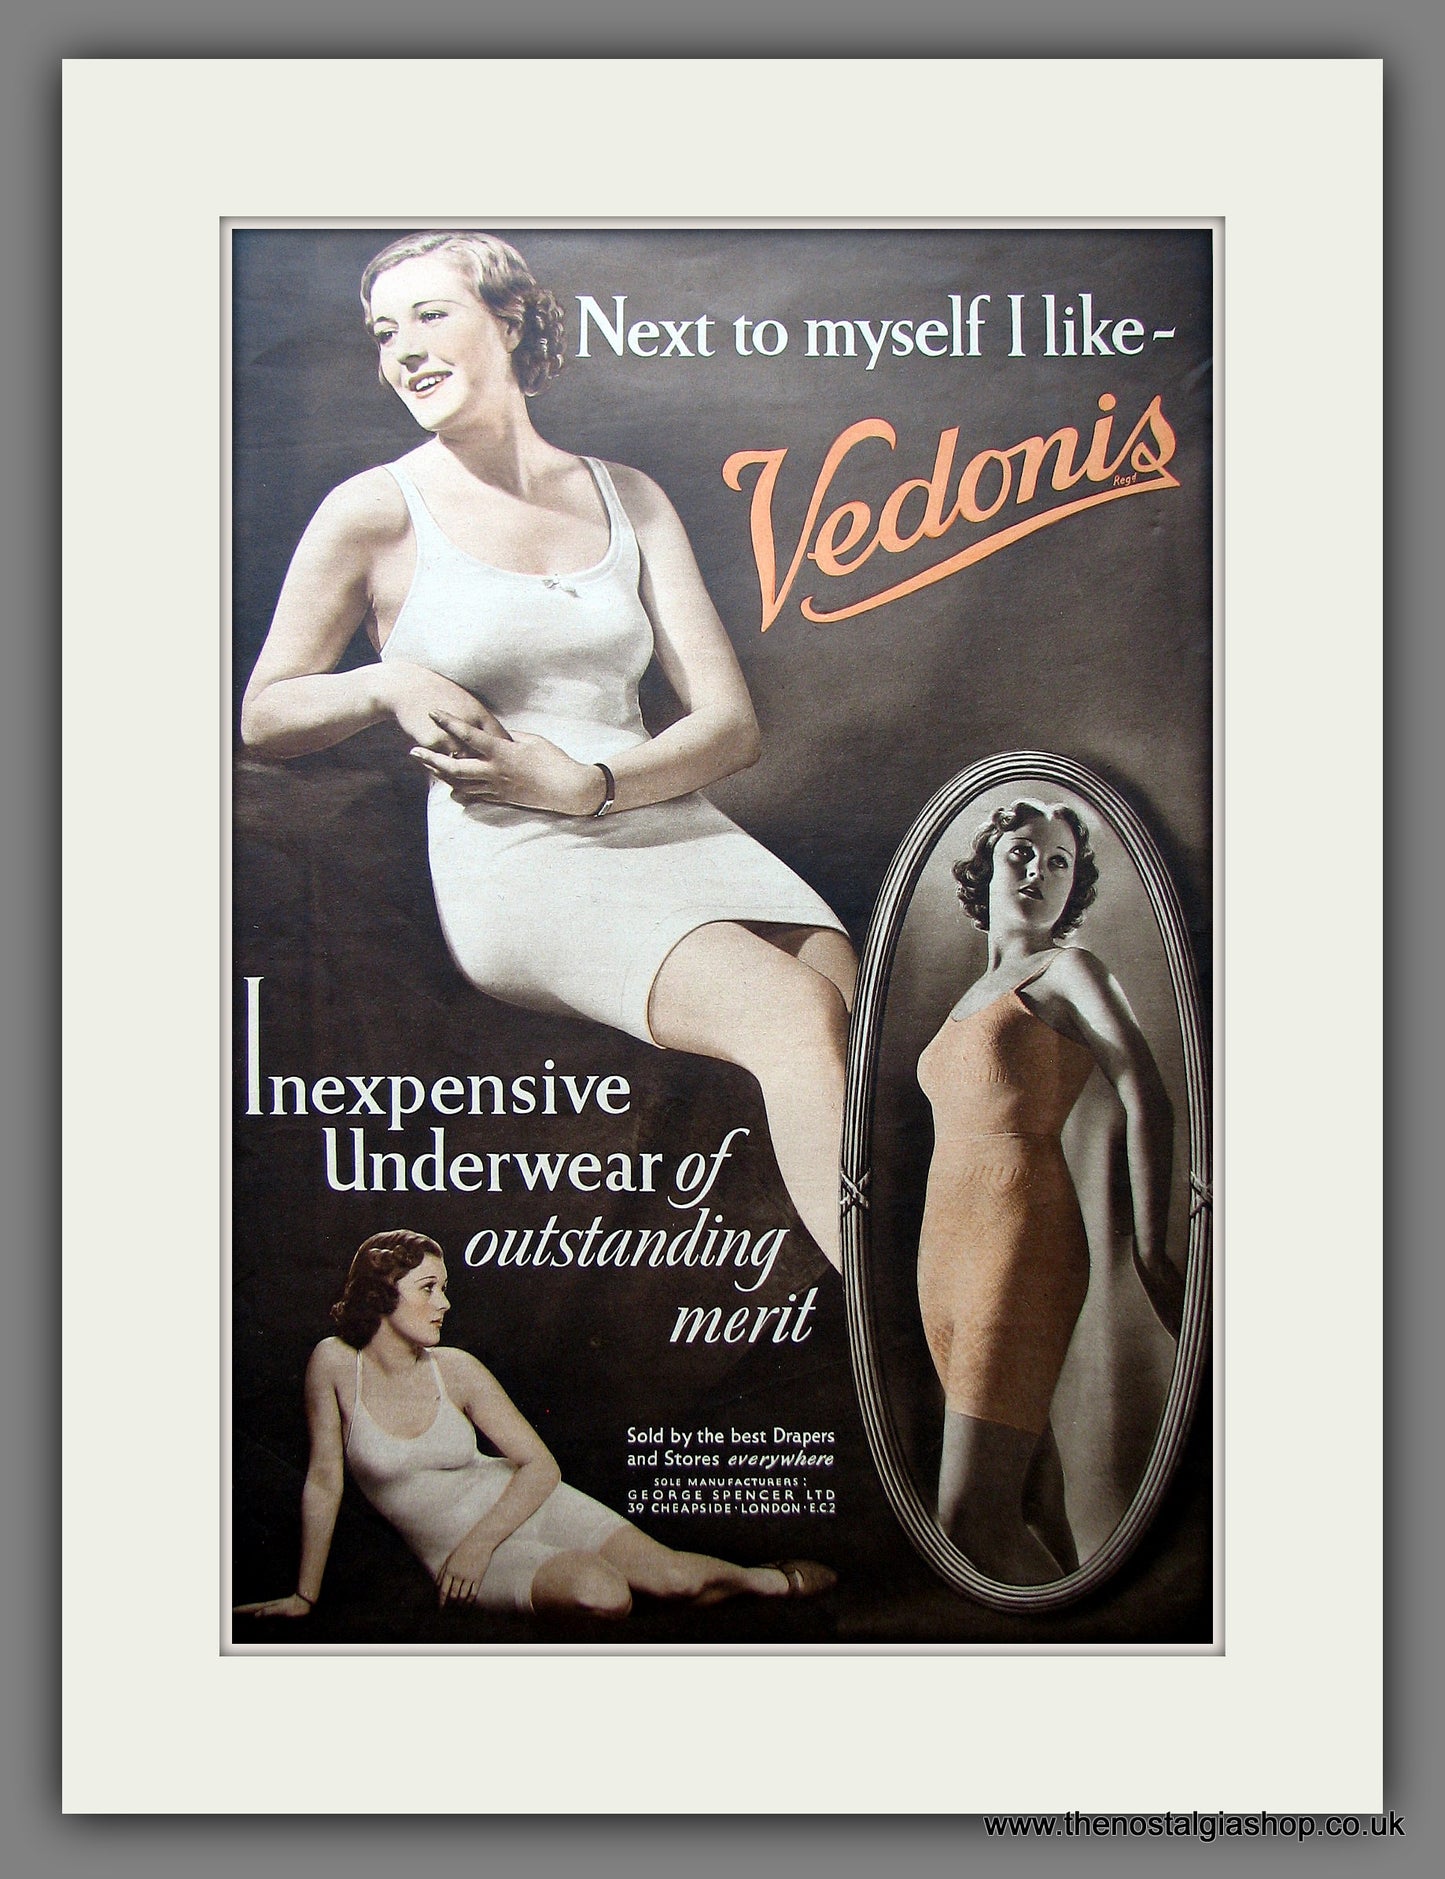 Vedonis Underwear Original Advert 1937 (ref AD9205)